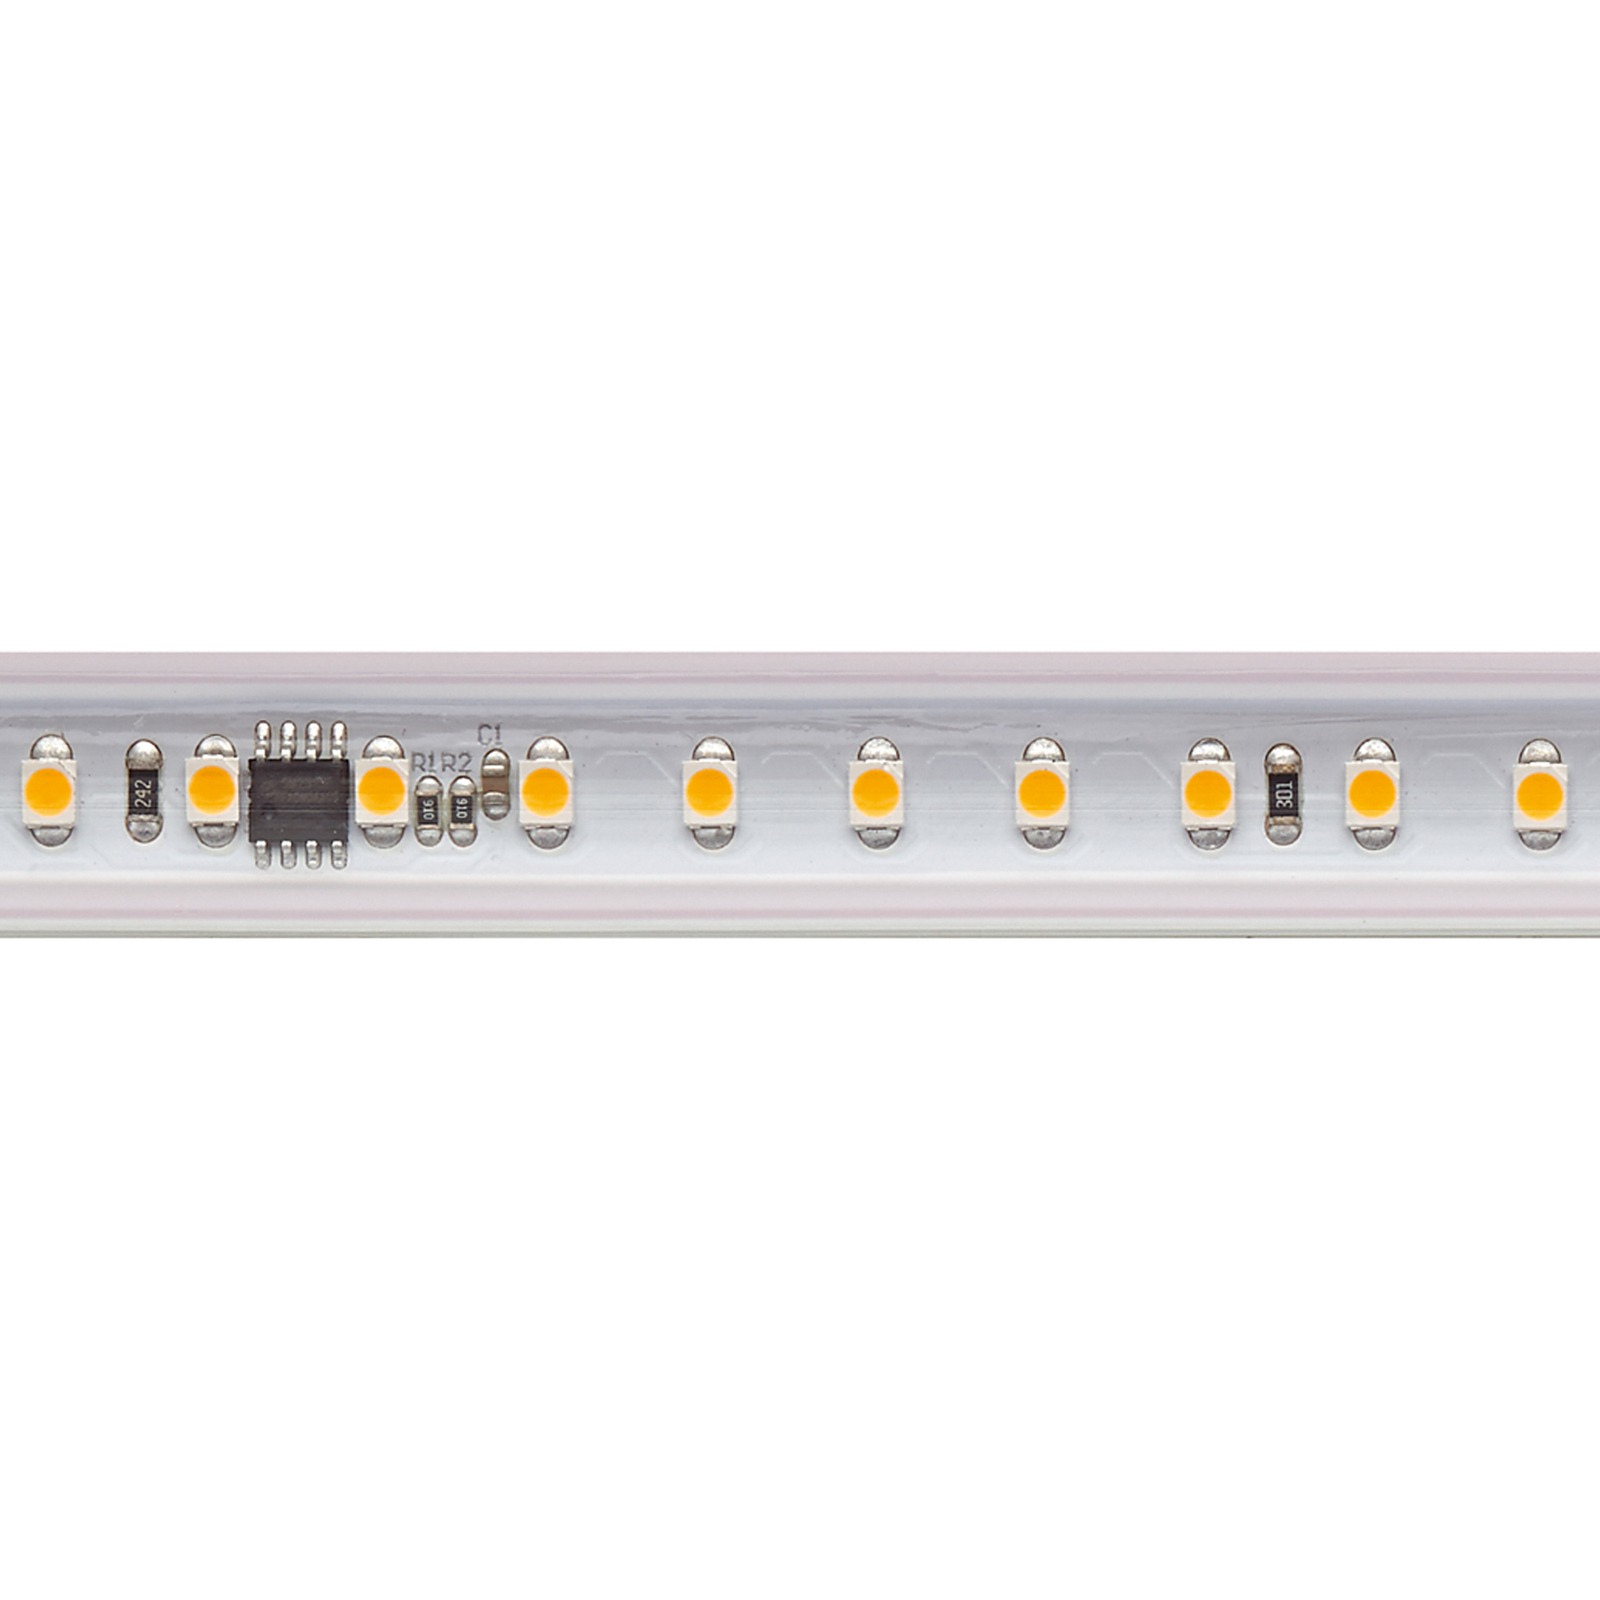 LED-Strip 5966 szett, 230V, 10m, IP65, 14W/m, 2,700K